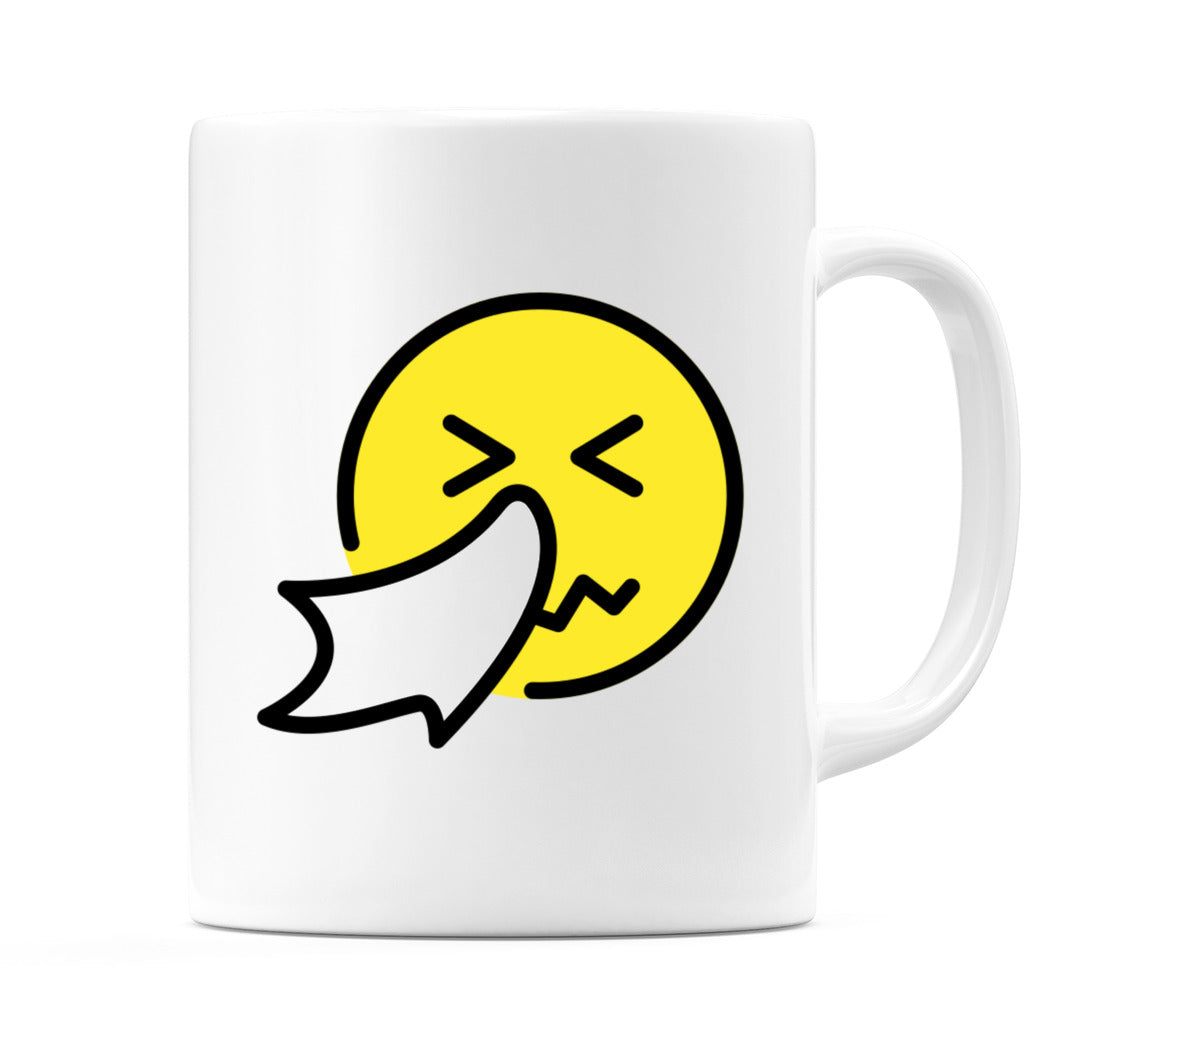 Sneezing Face Emoji Mug